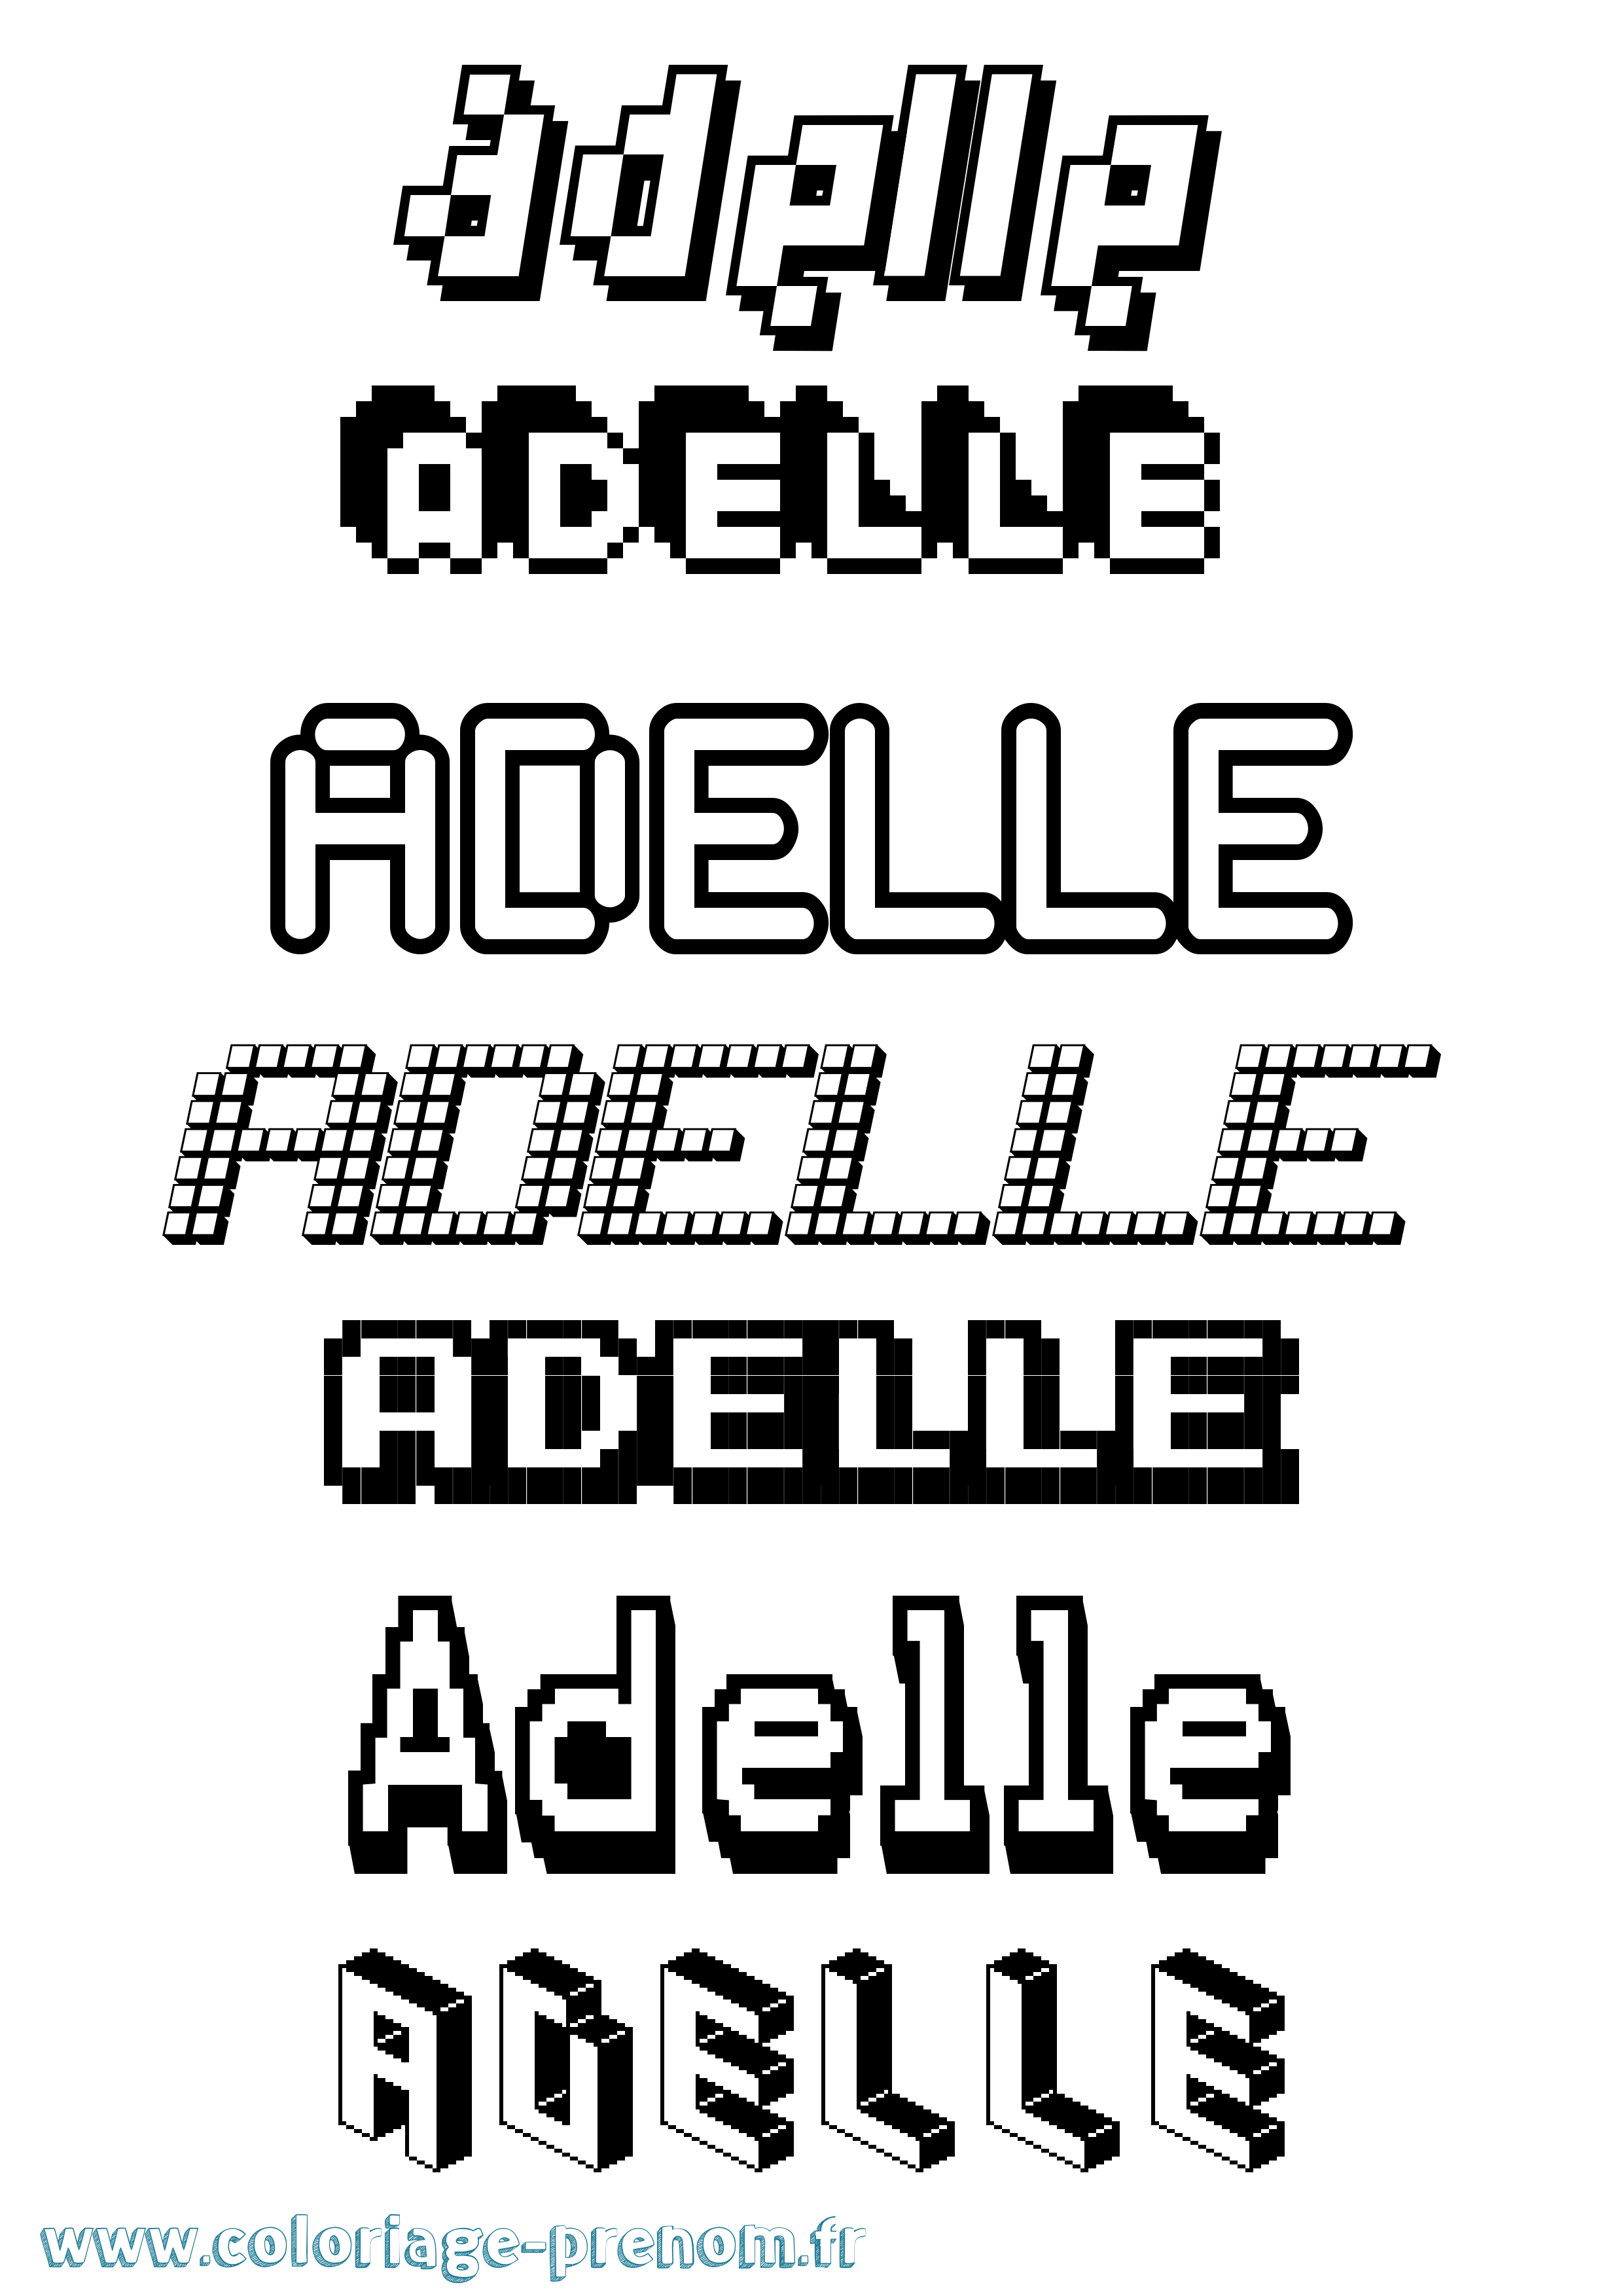 Coloriage prénom Adelle Pixel